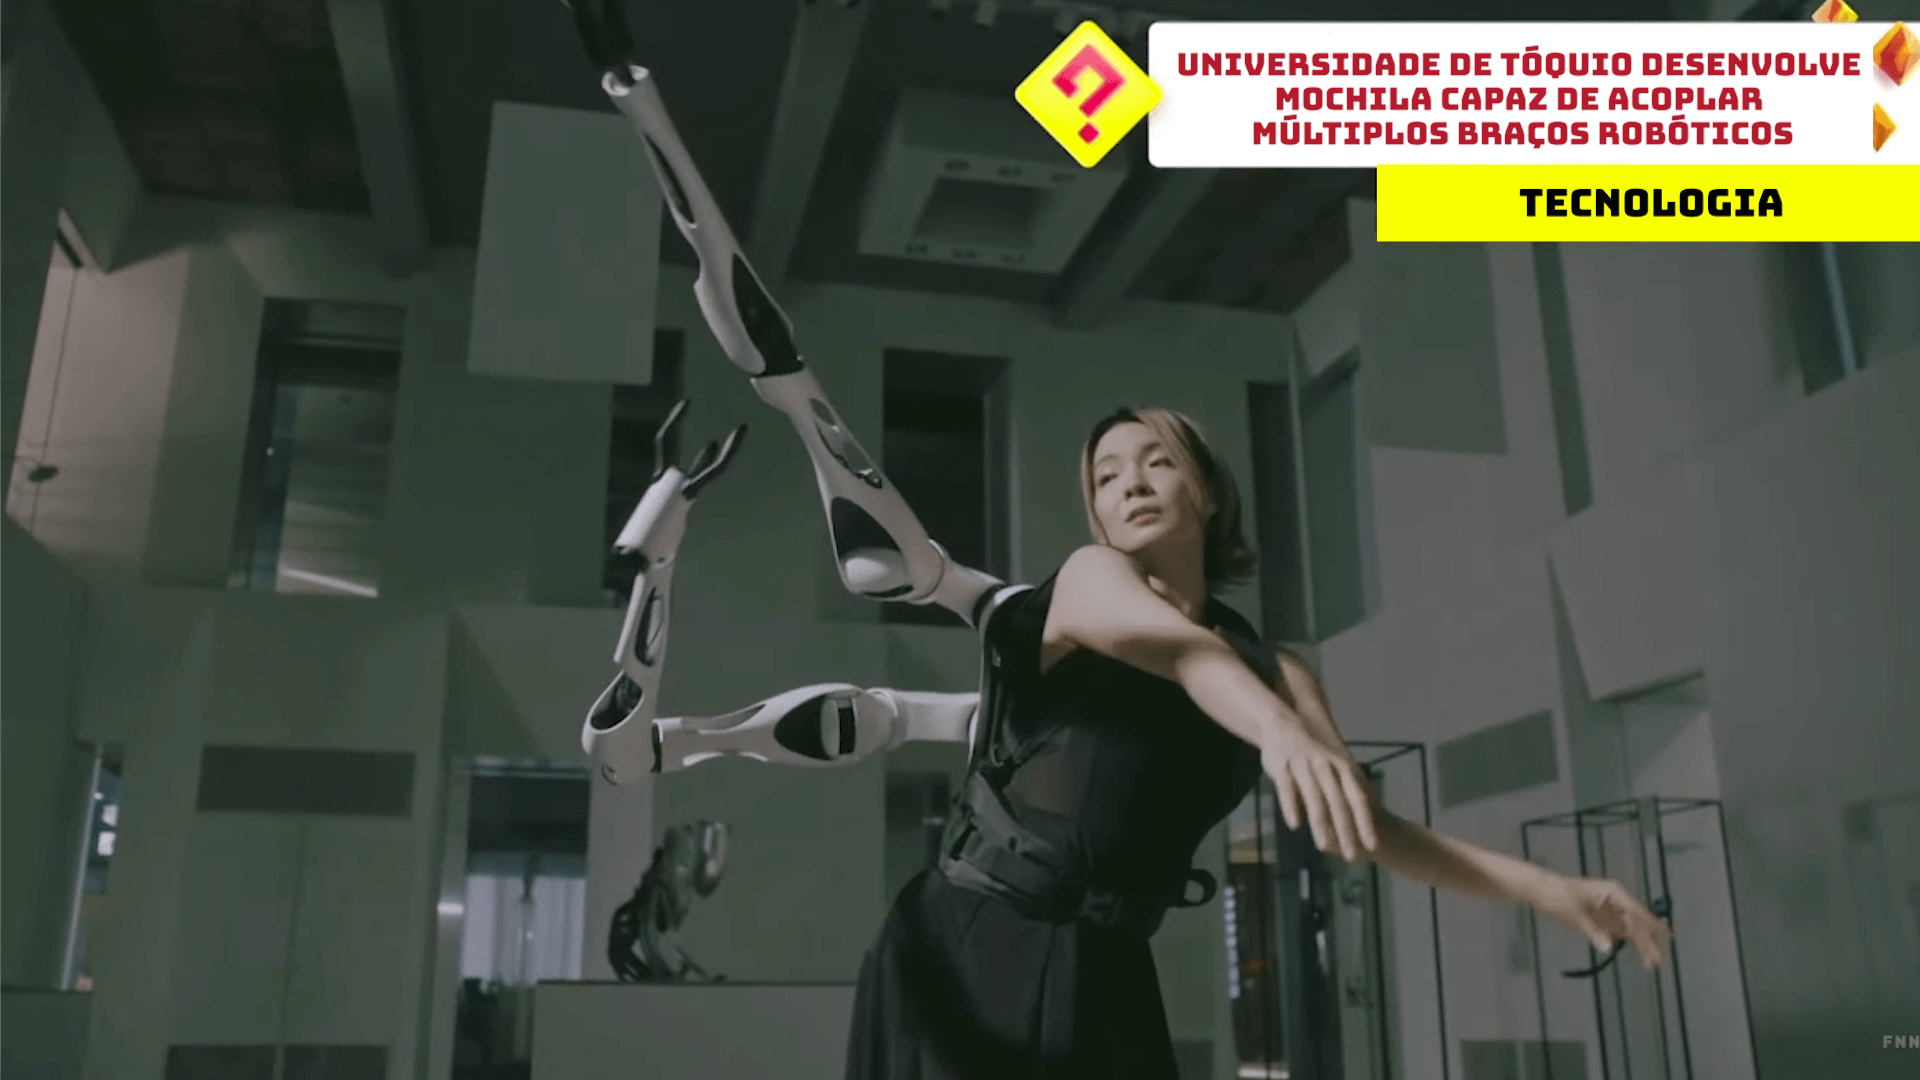 Universidade de Tóquio desenvolve mochila capaz de acoplar múltiplos braços robóticos